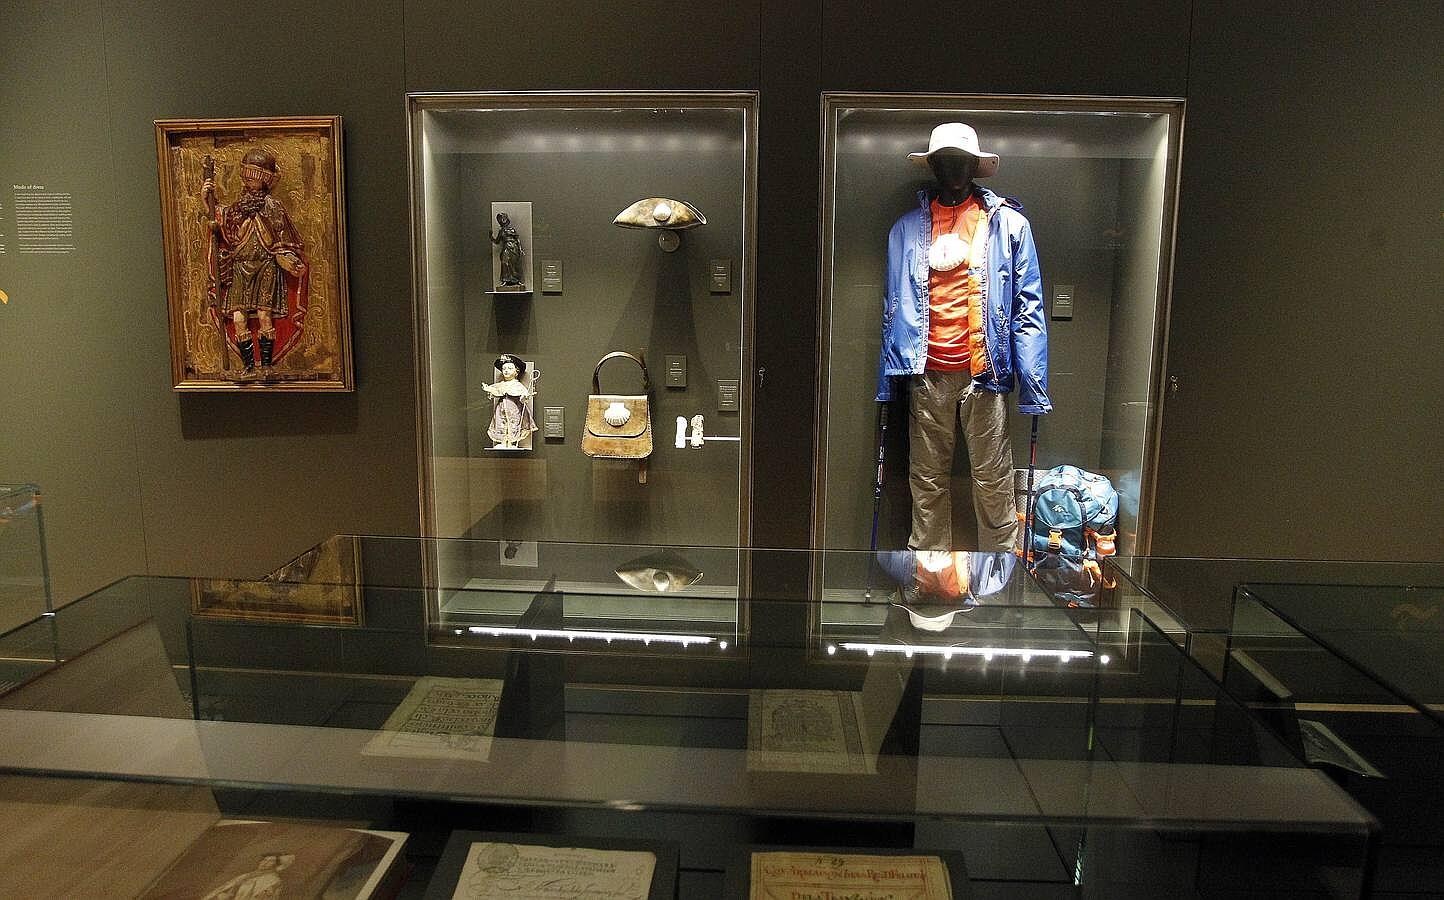 La característica indumentaria del peregrino de la actualidad se musealiza junto a prendas de siglos anteriores